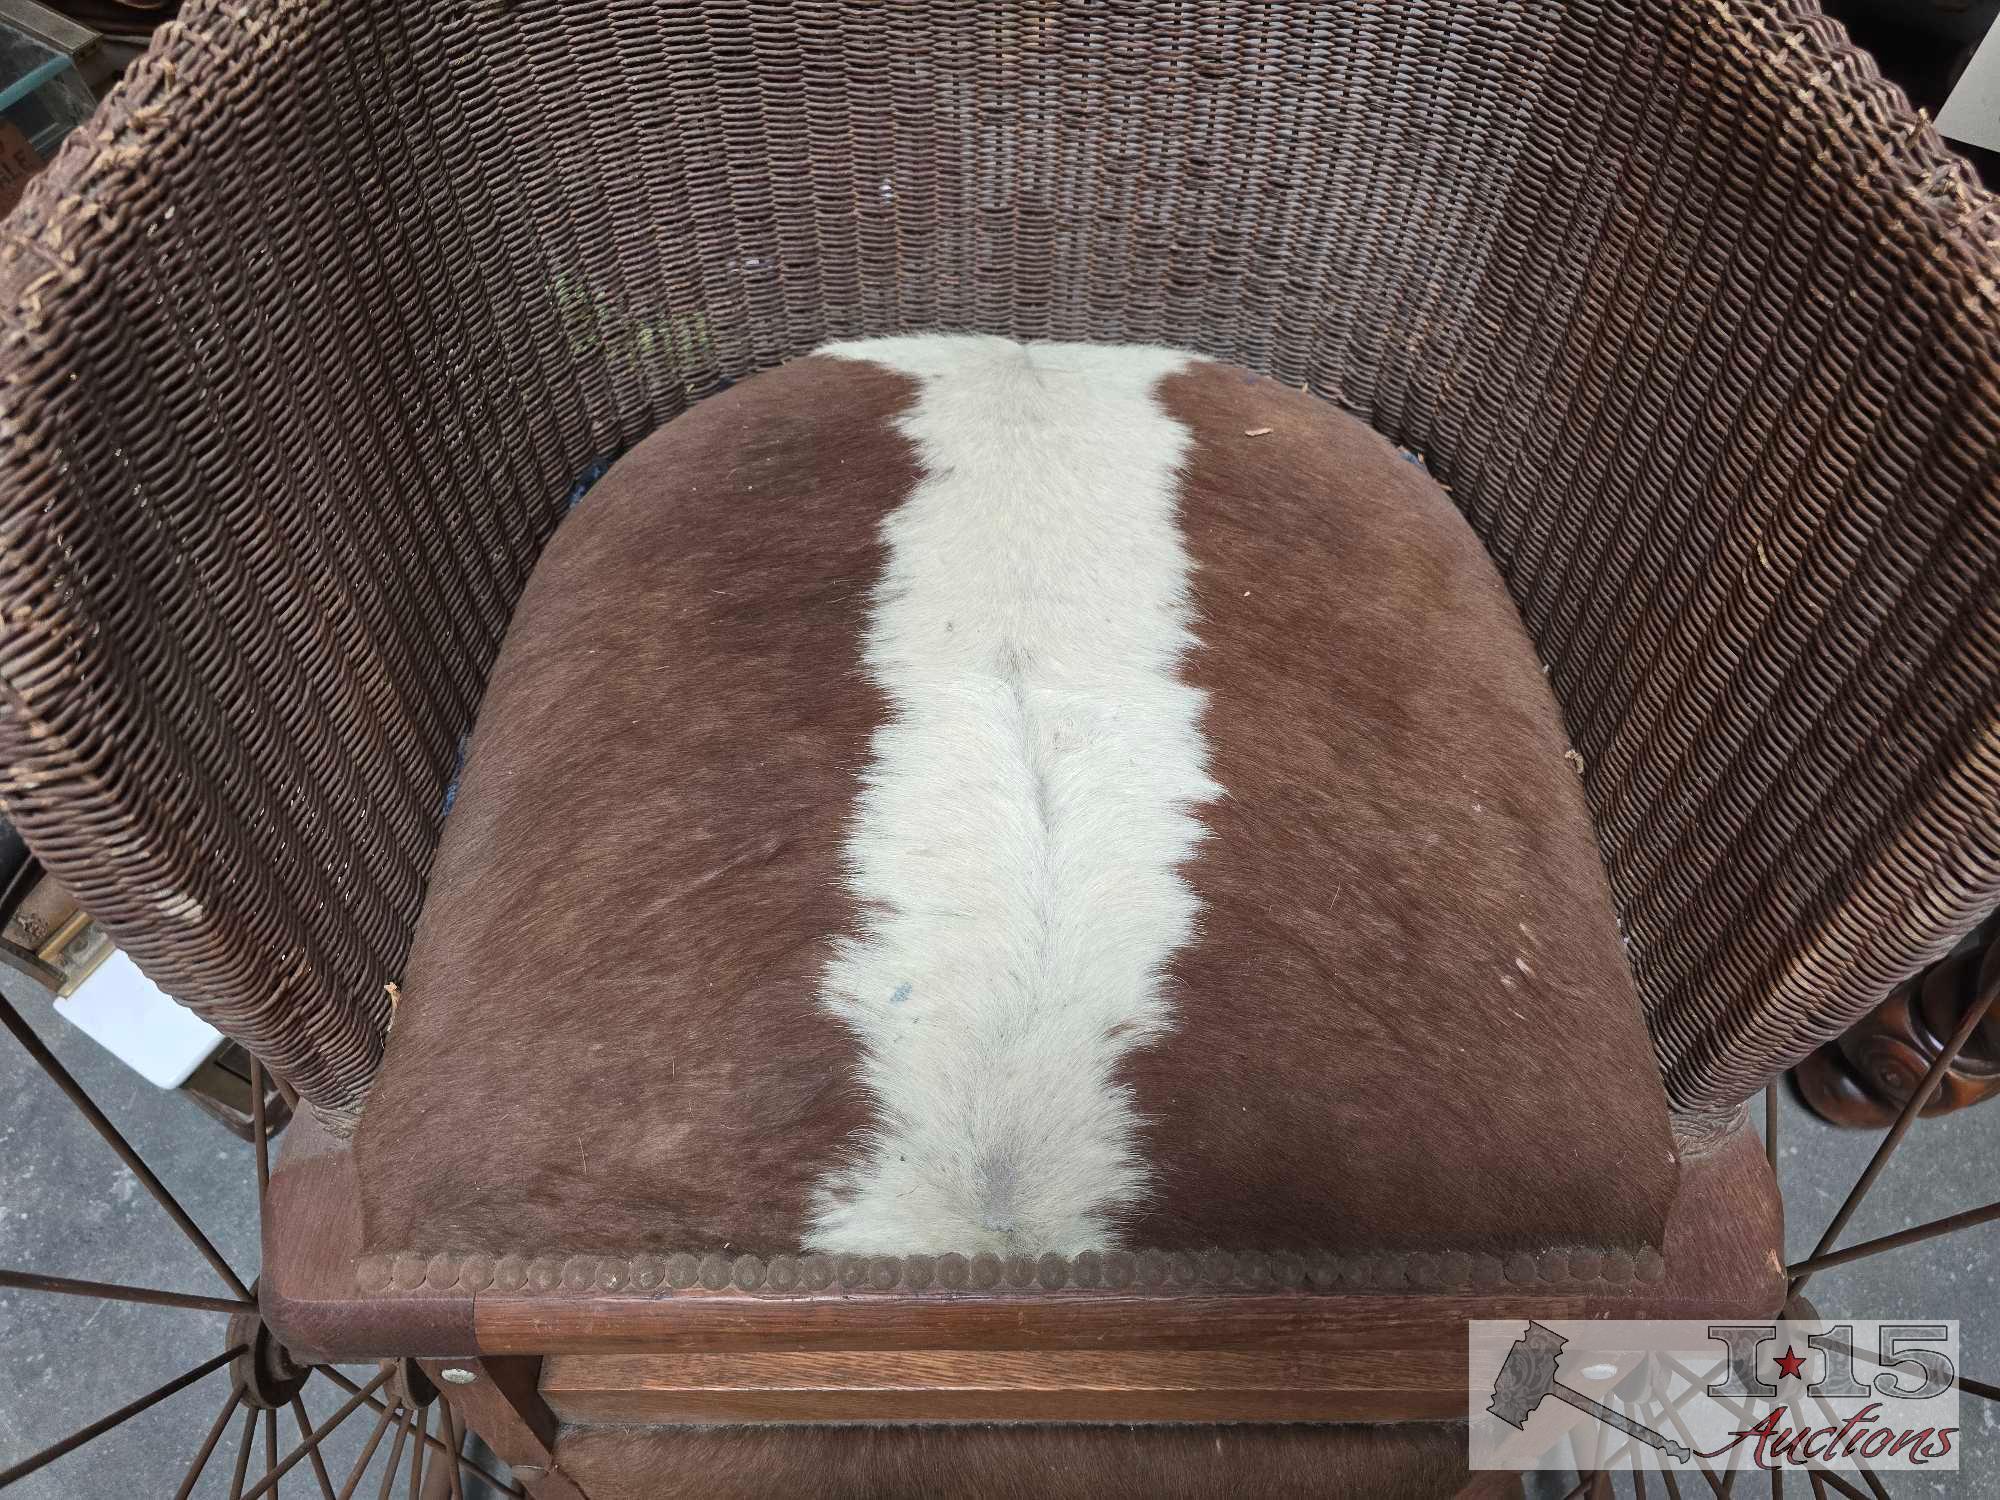 Antique Cowhide Wheel Chair